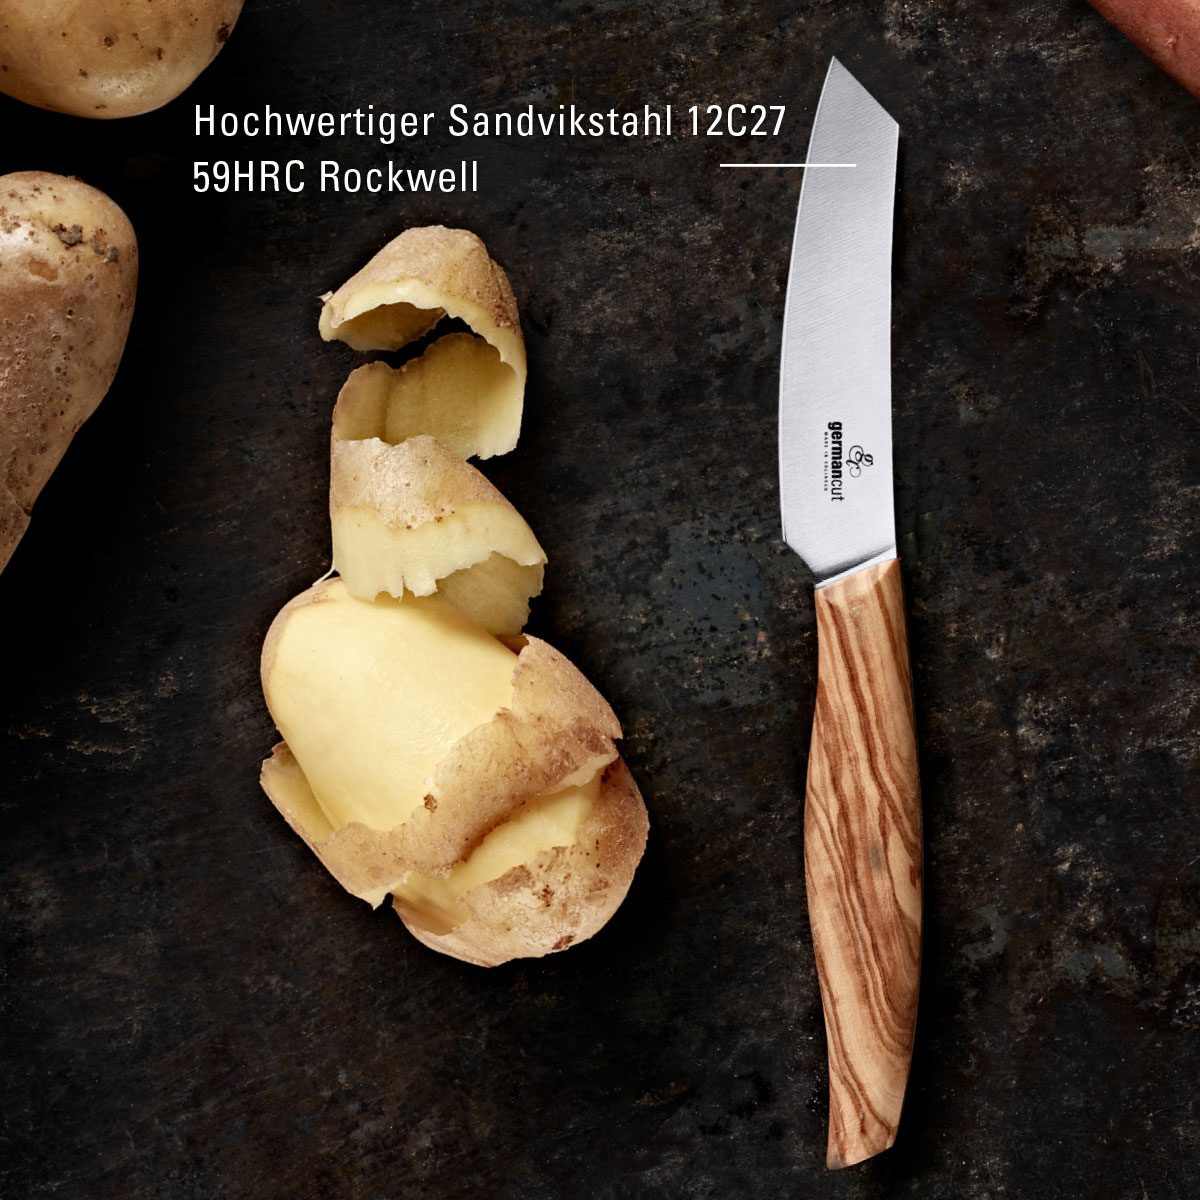 Igelbild Paringlover Schaelmesser Kartoffel